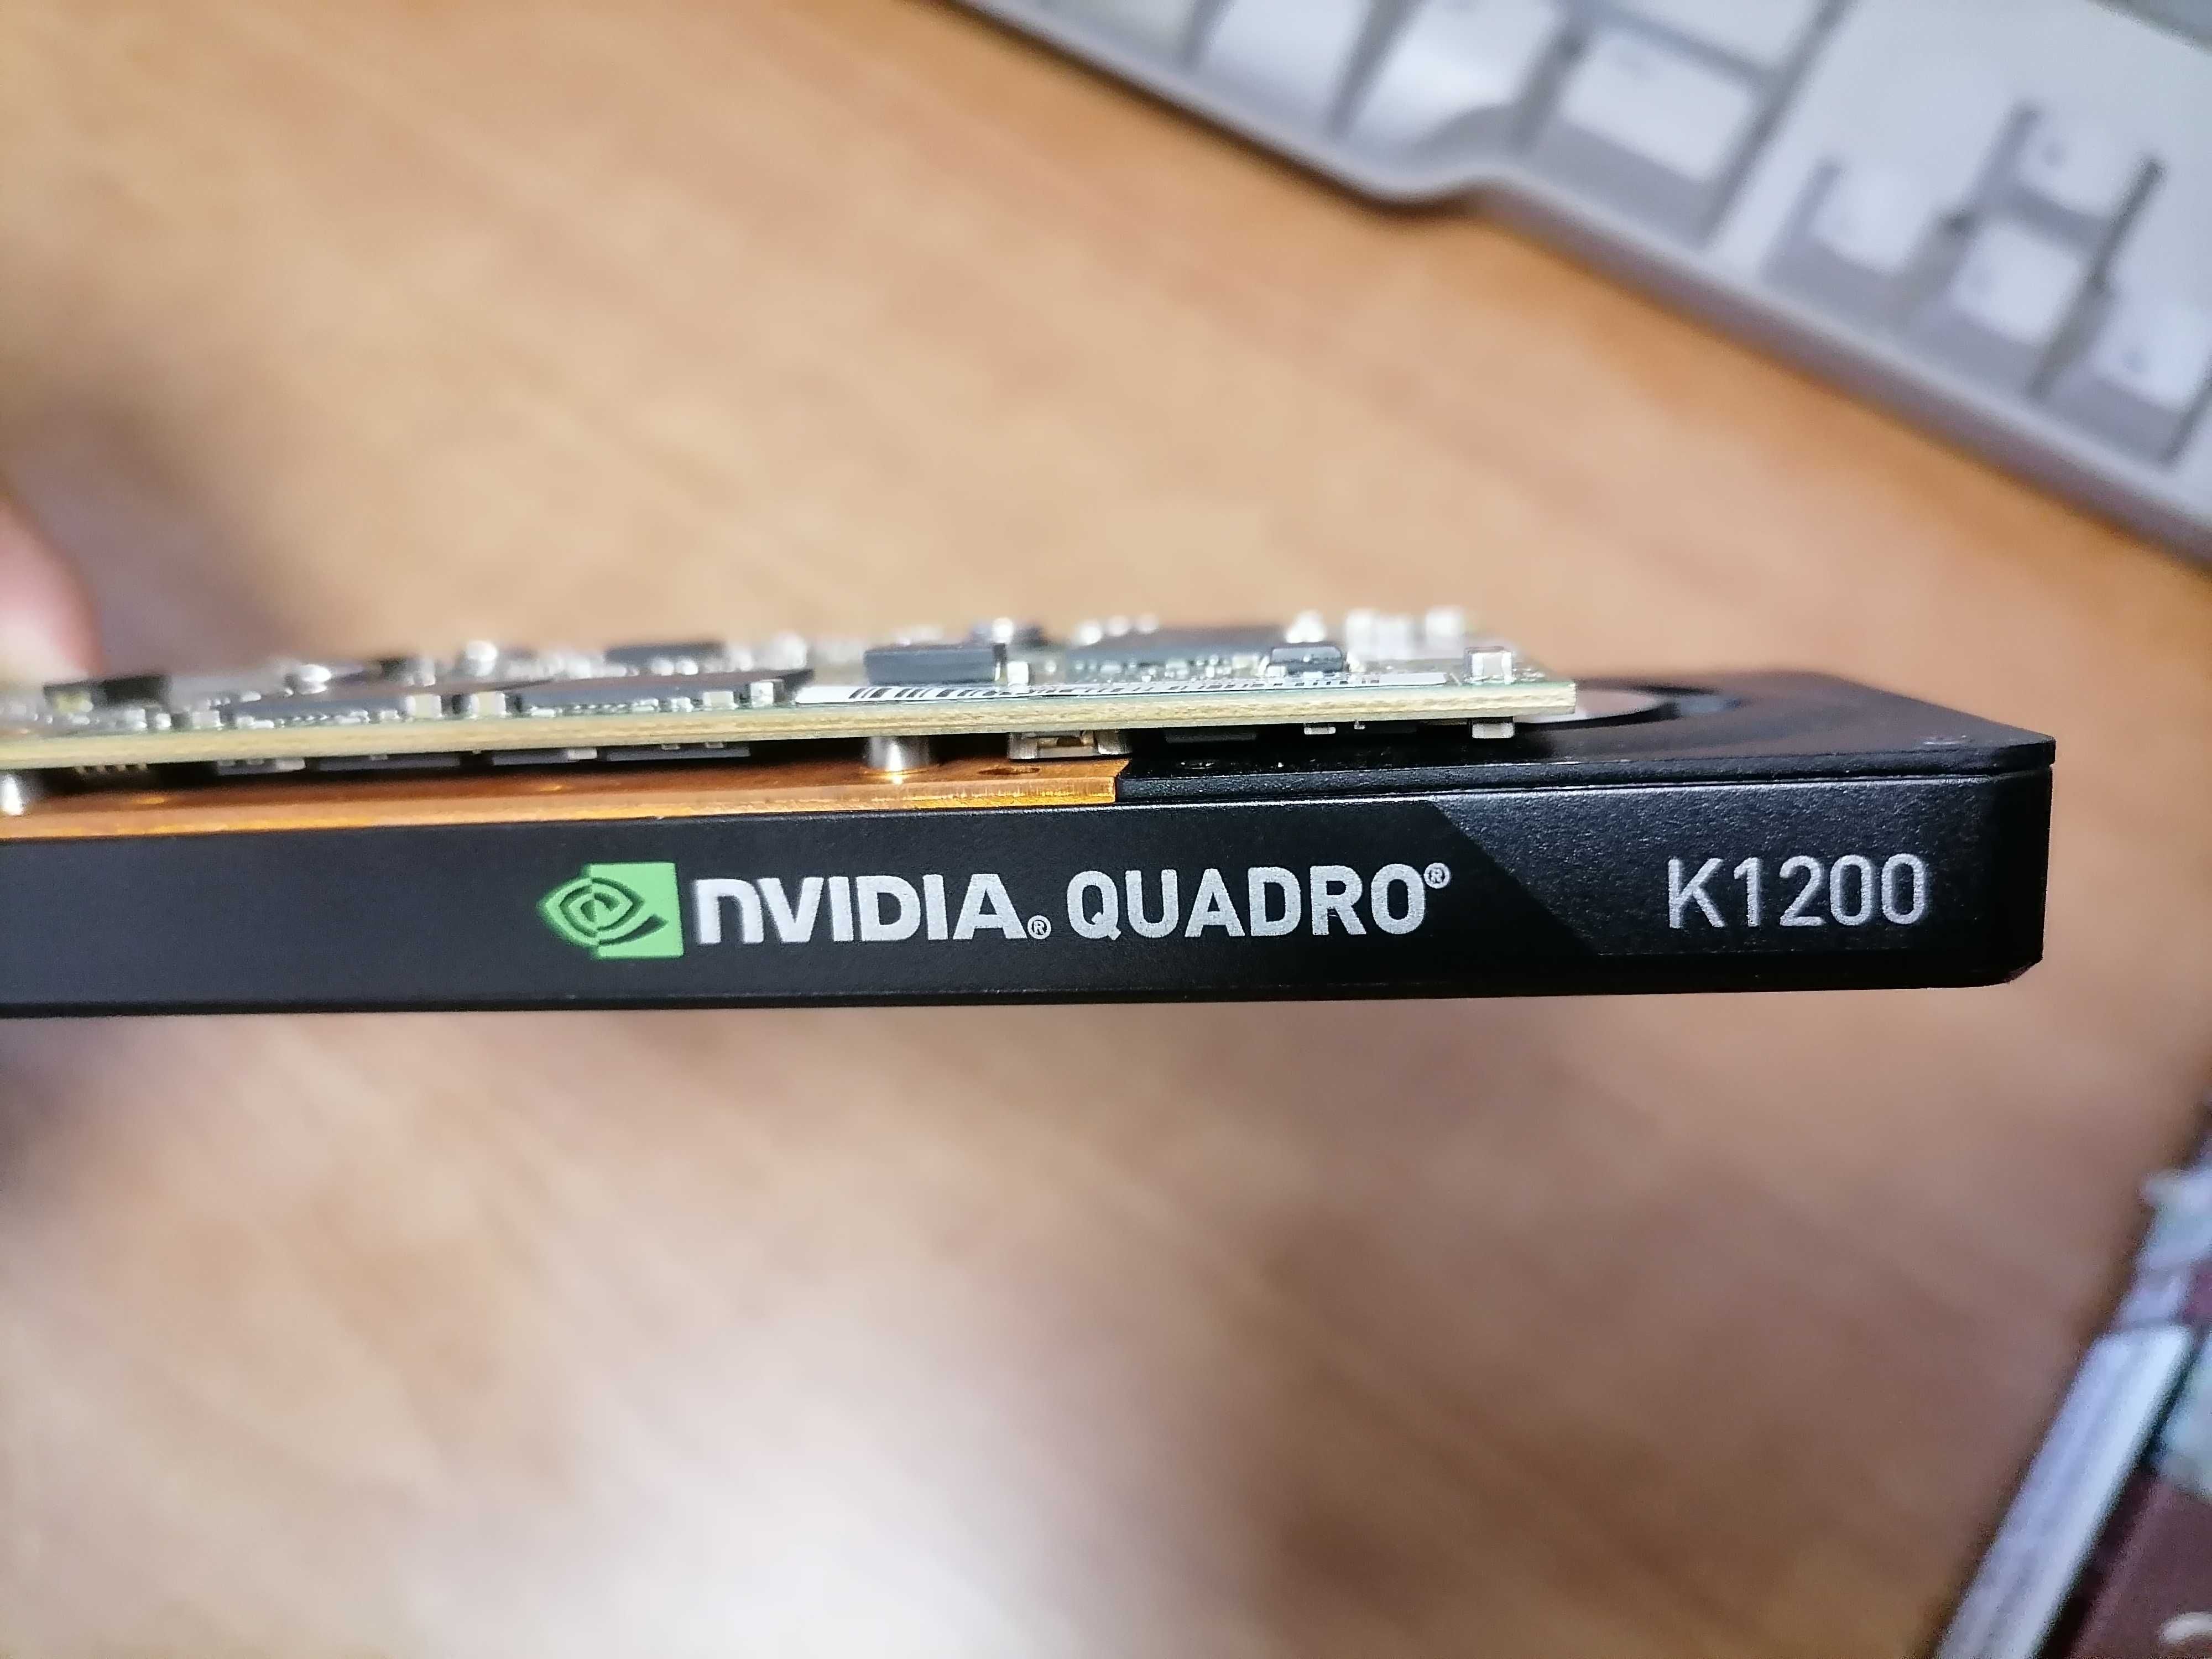 NVIDIA QUADRO K1200 като нова и кабел за нея за свърз. към монитора